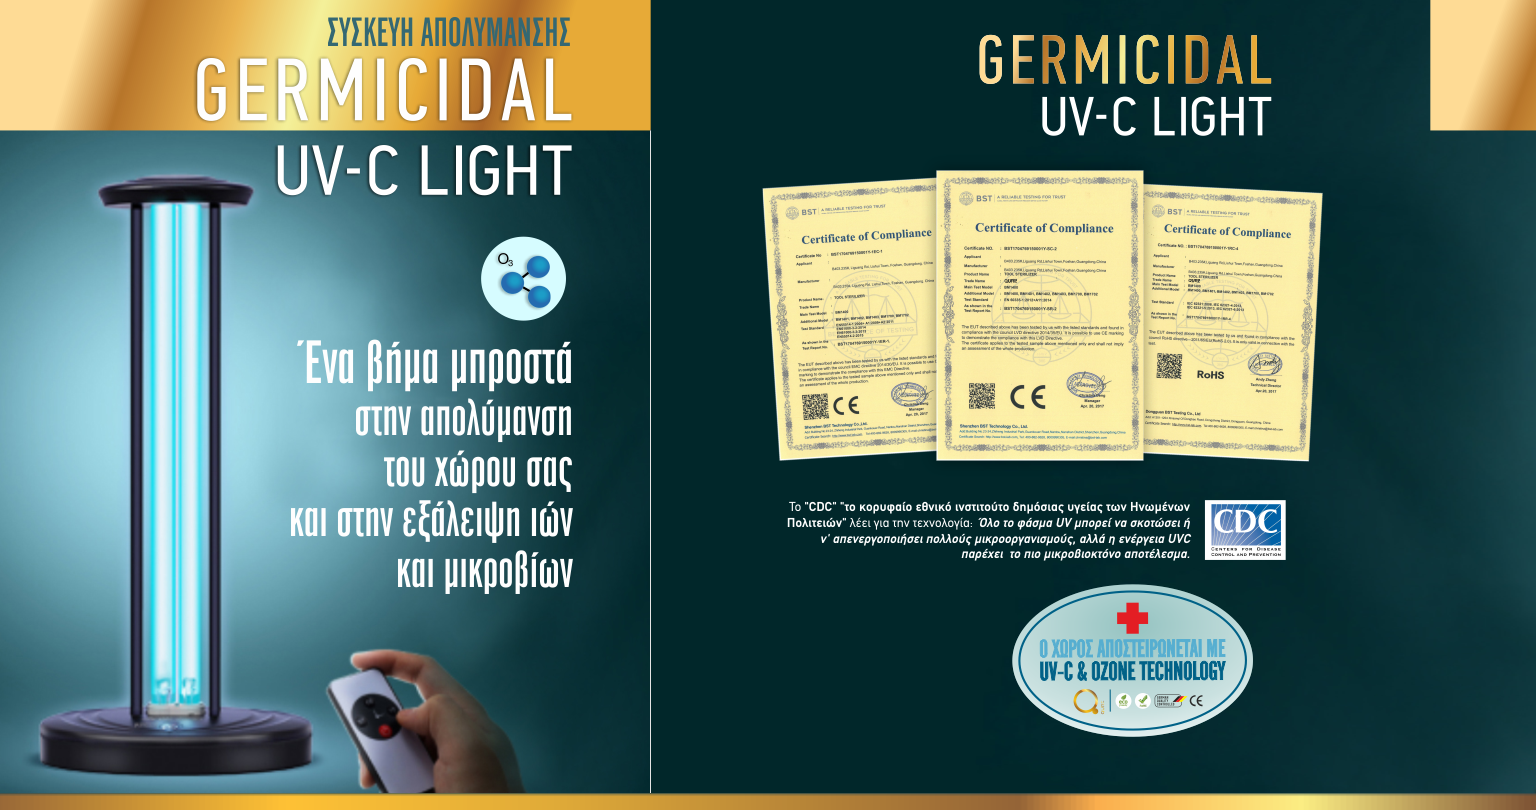 Λαμπτήρας αποστείρωσης εσωτερικών χώρων UV-C Germicidal Light - Led Sterlilizing dm 901402-22971